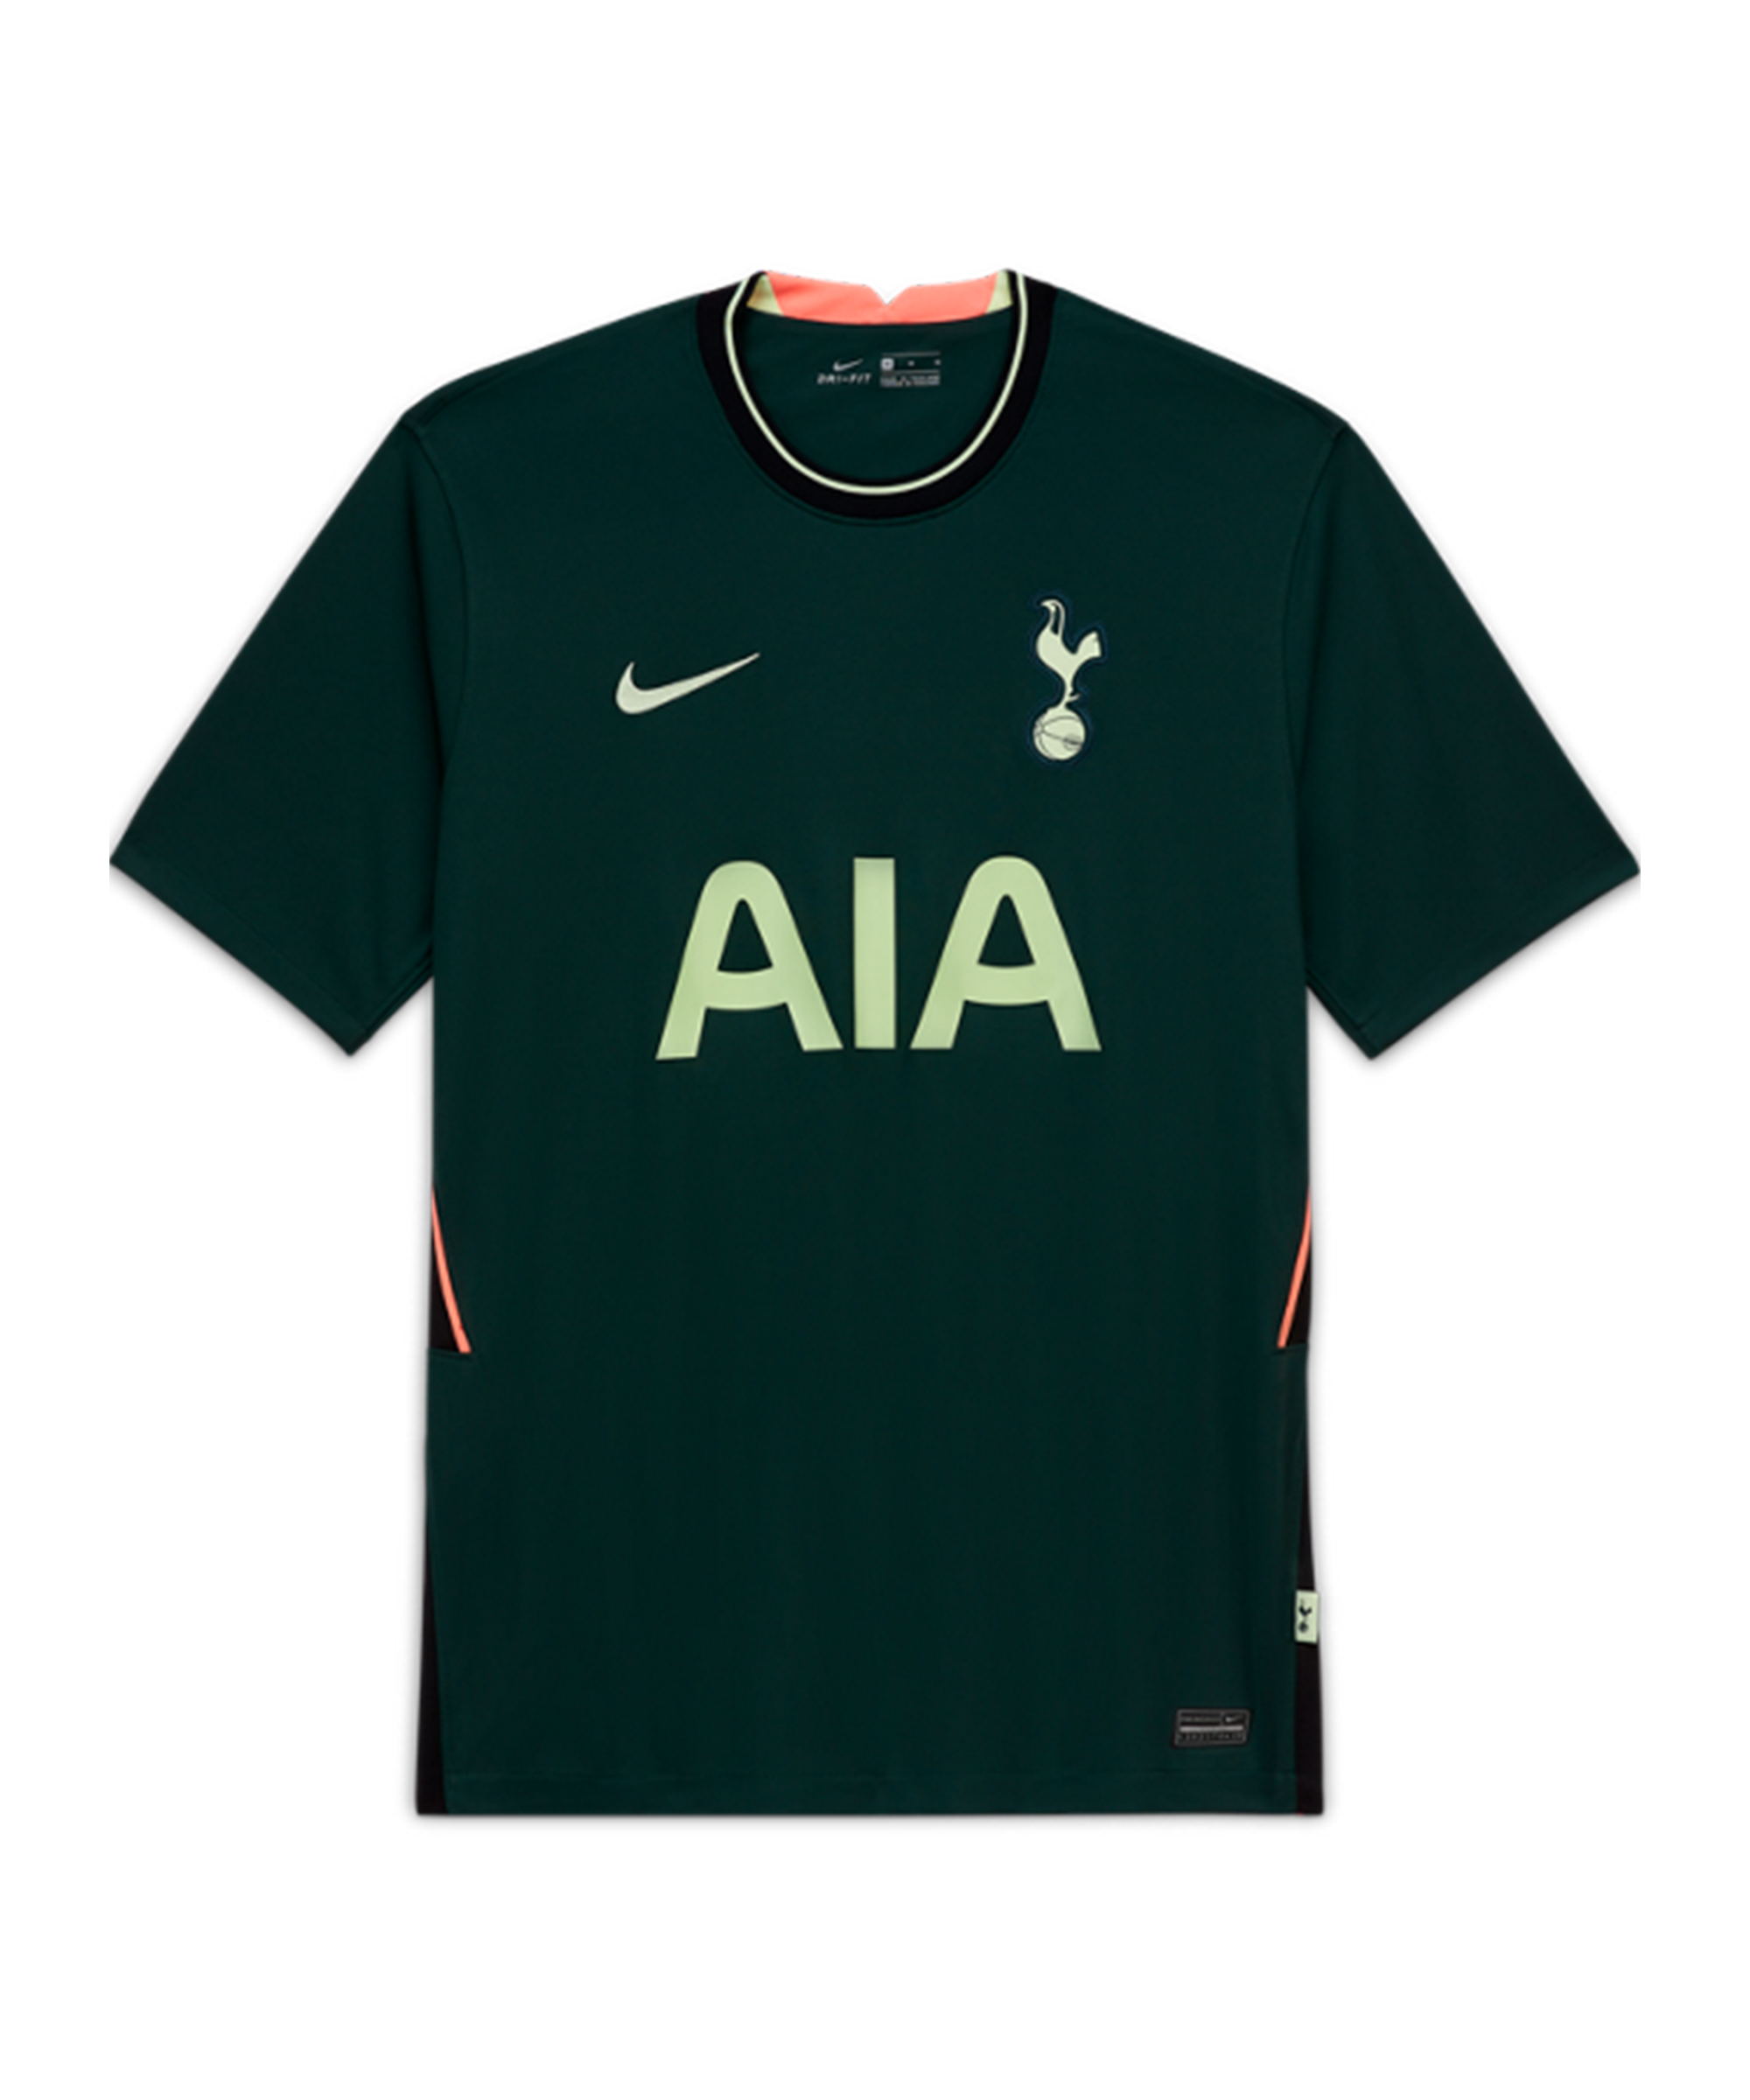 Tottenham Hotspur Kids Home Kit 2021/22